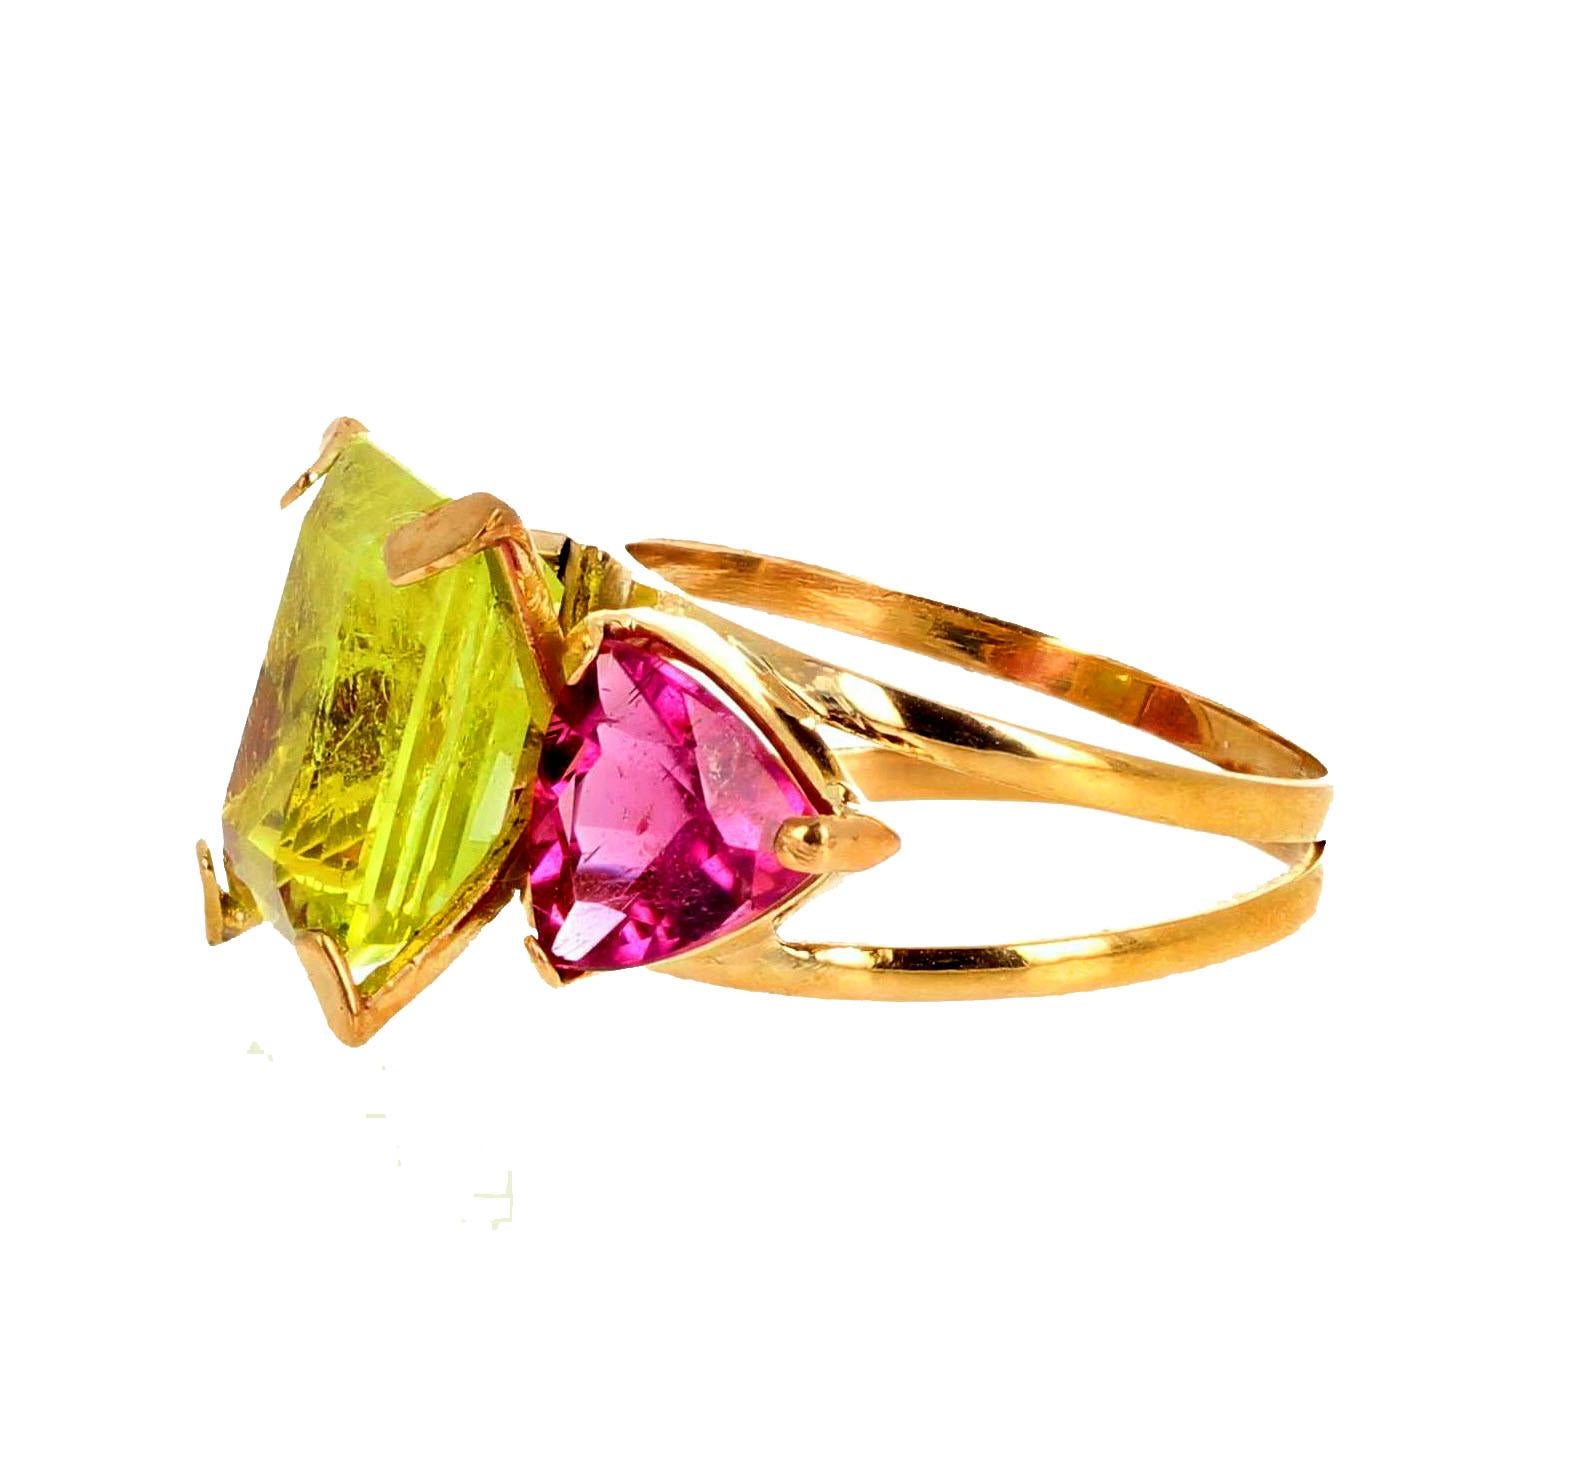 Magnifique Chrysobéryl jaune vert naturel de 5,17 carats rehaussé de deux trillions de 1,7 carats chacun de tourmalines naturelles rose vif serties dans une bague en or jaune 18 carats de taille 7 (sizable). Ce magnifique chrysobéryl se trouve au